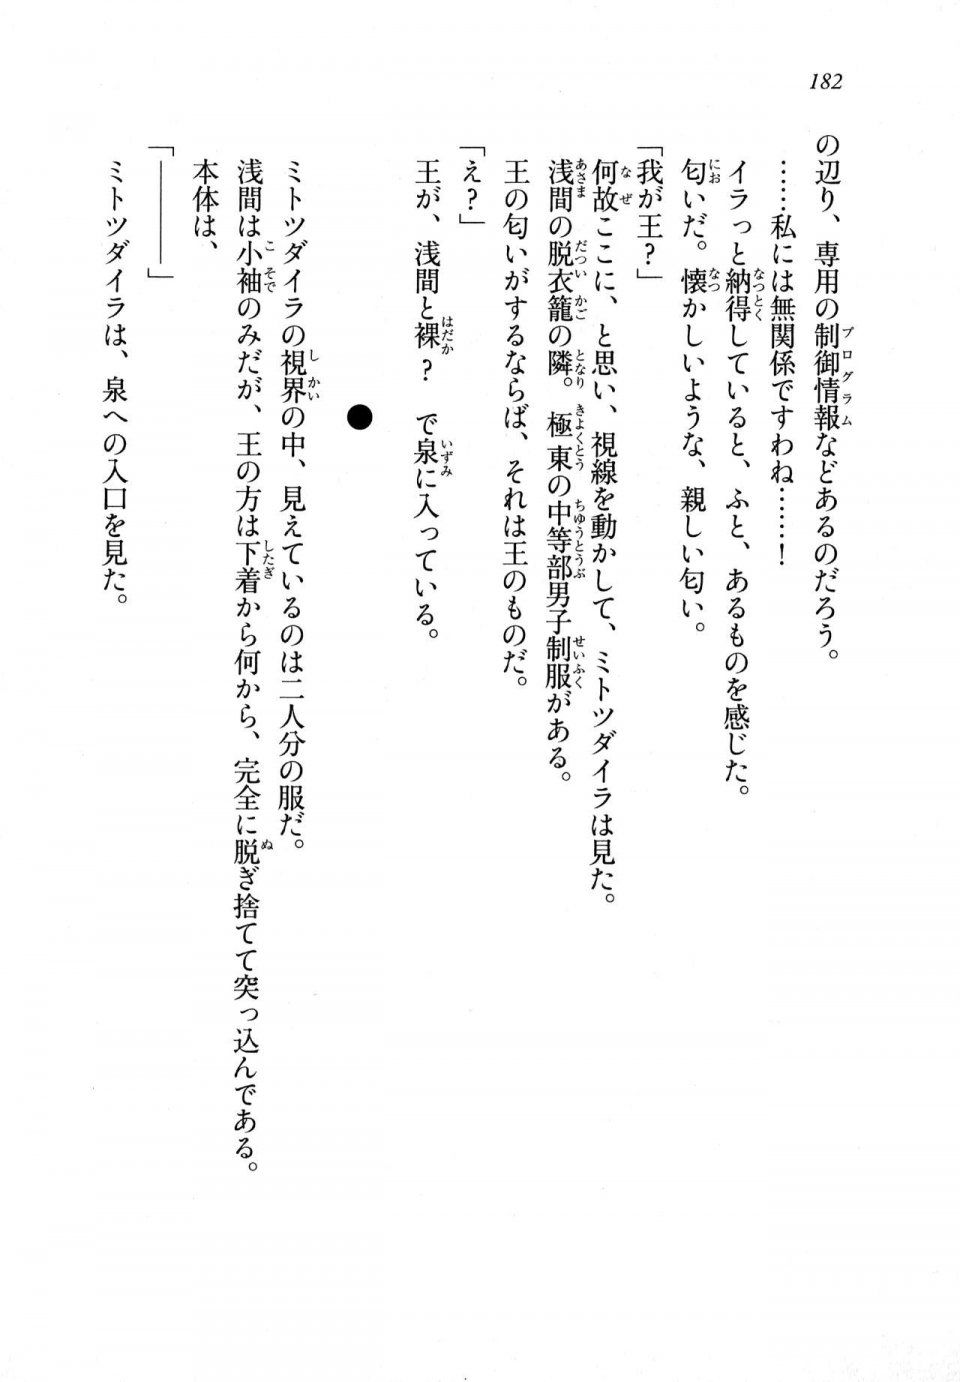 Kyoukai Senjou no Horizon LN Sidestory Vol 1 - Photo #180